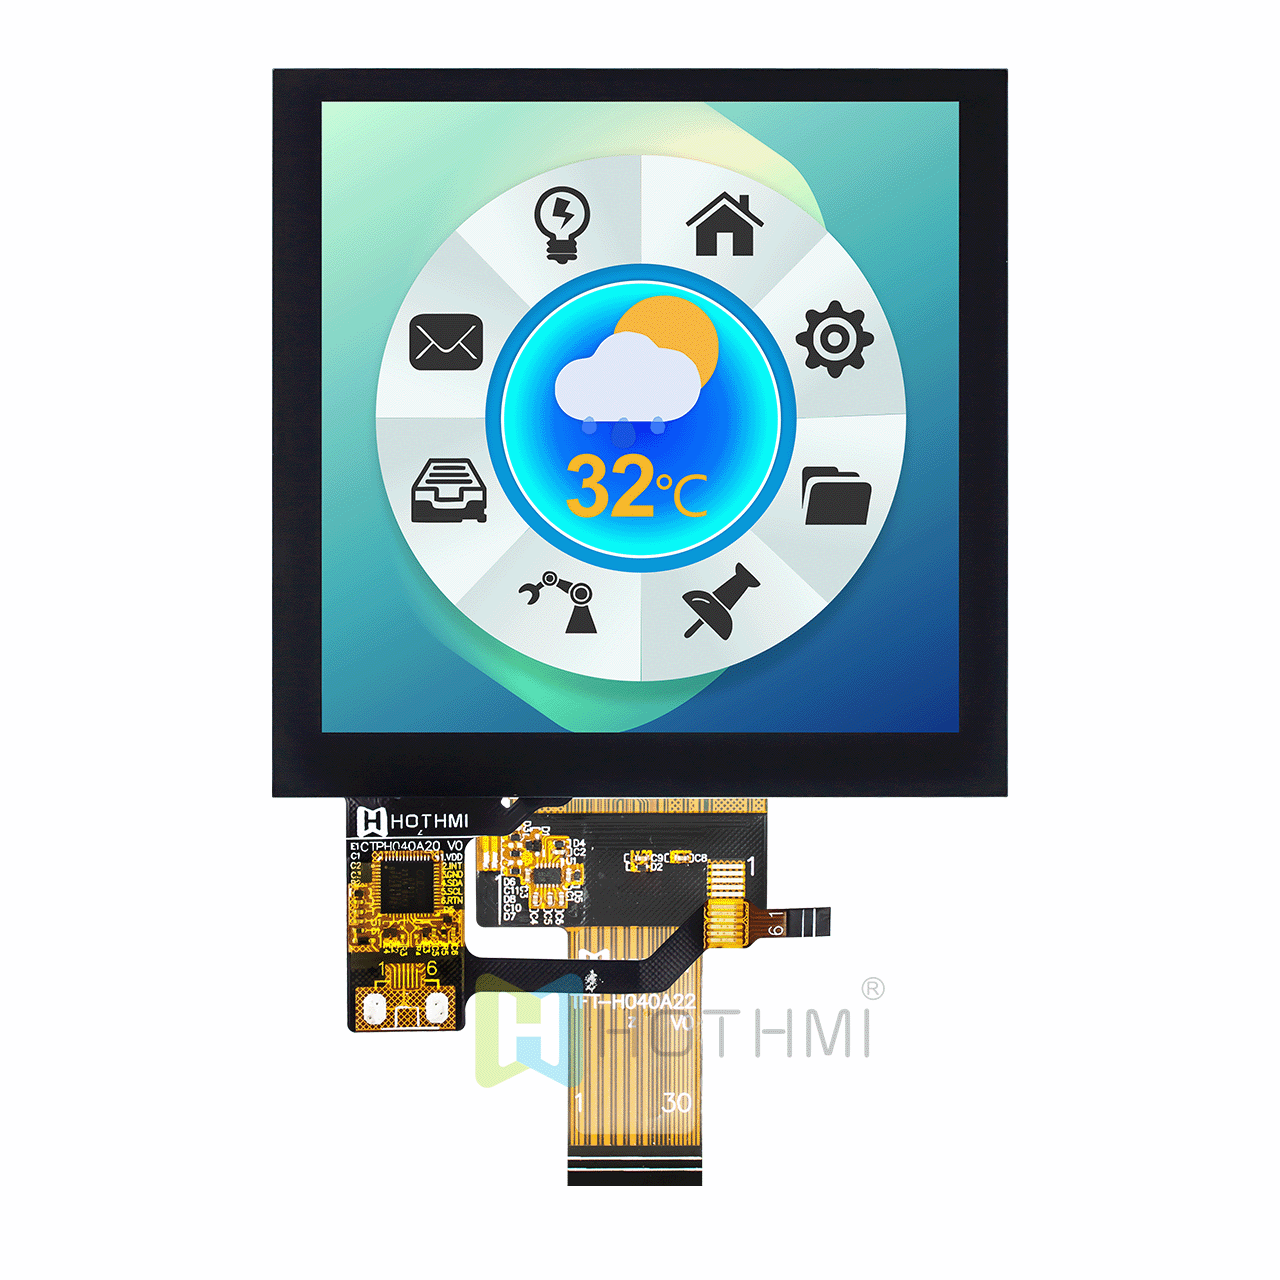 4寸方形TFT液晶模块显示屏 720X720px 高清/ST7701S/LVDS接口/IPS/带电容触摸屏